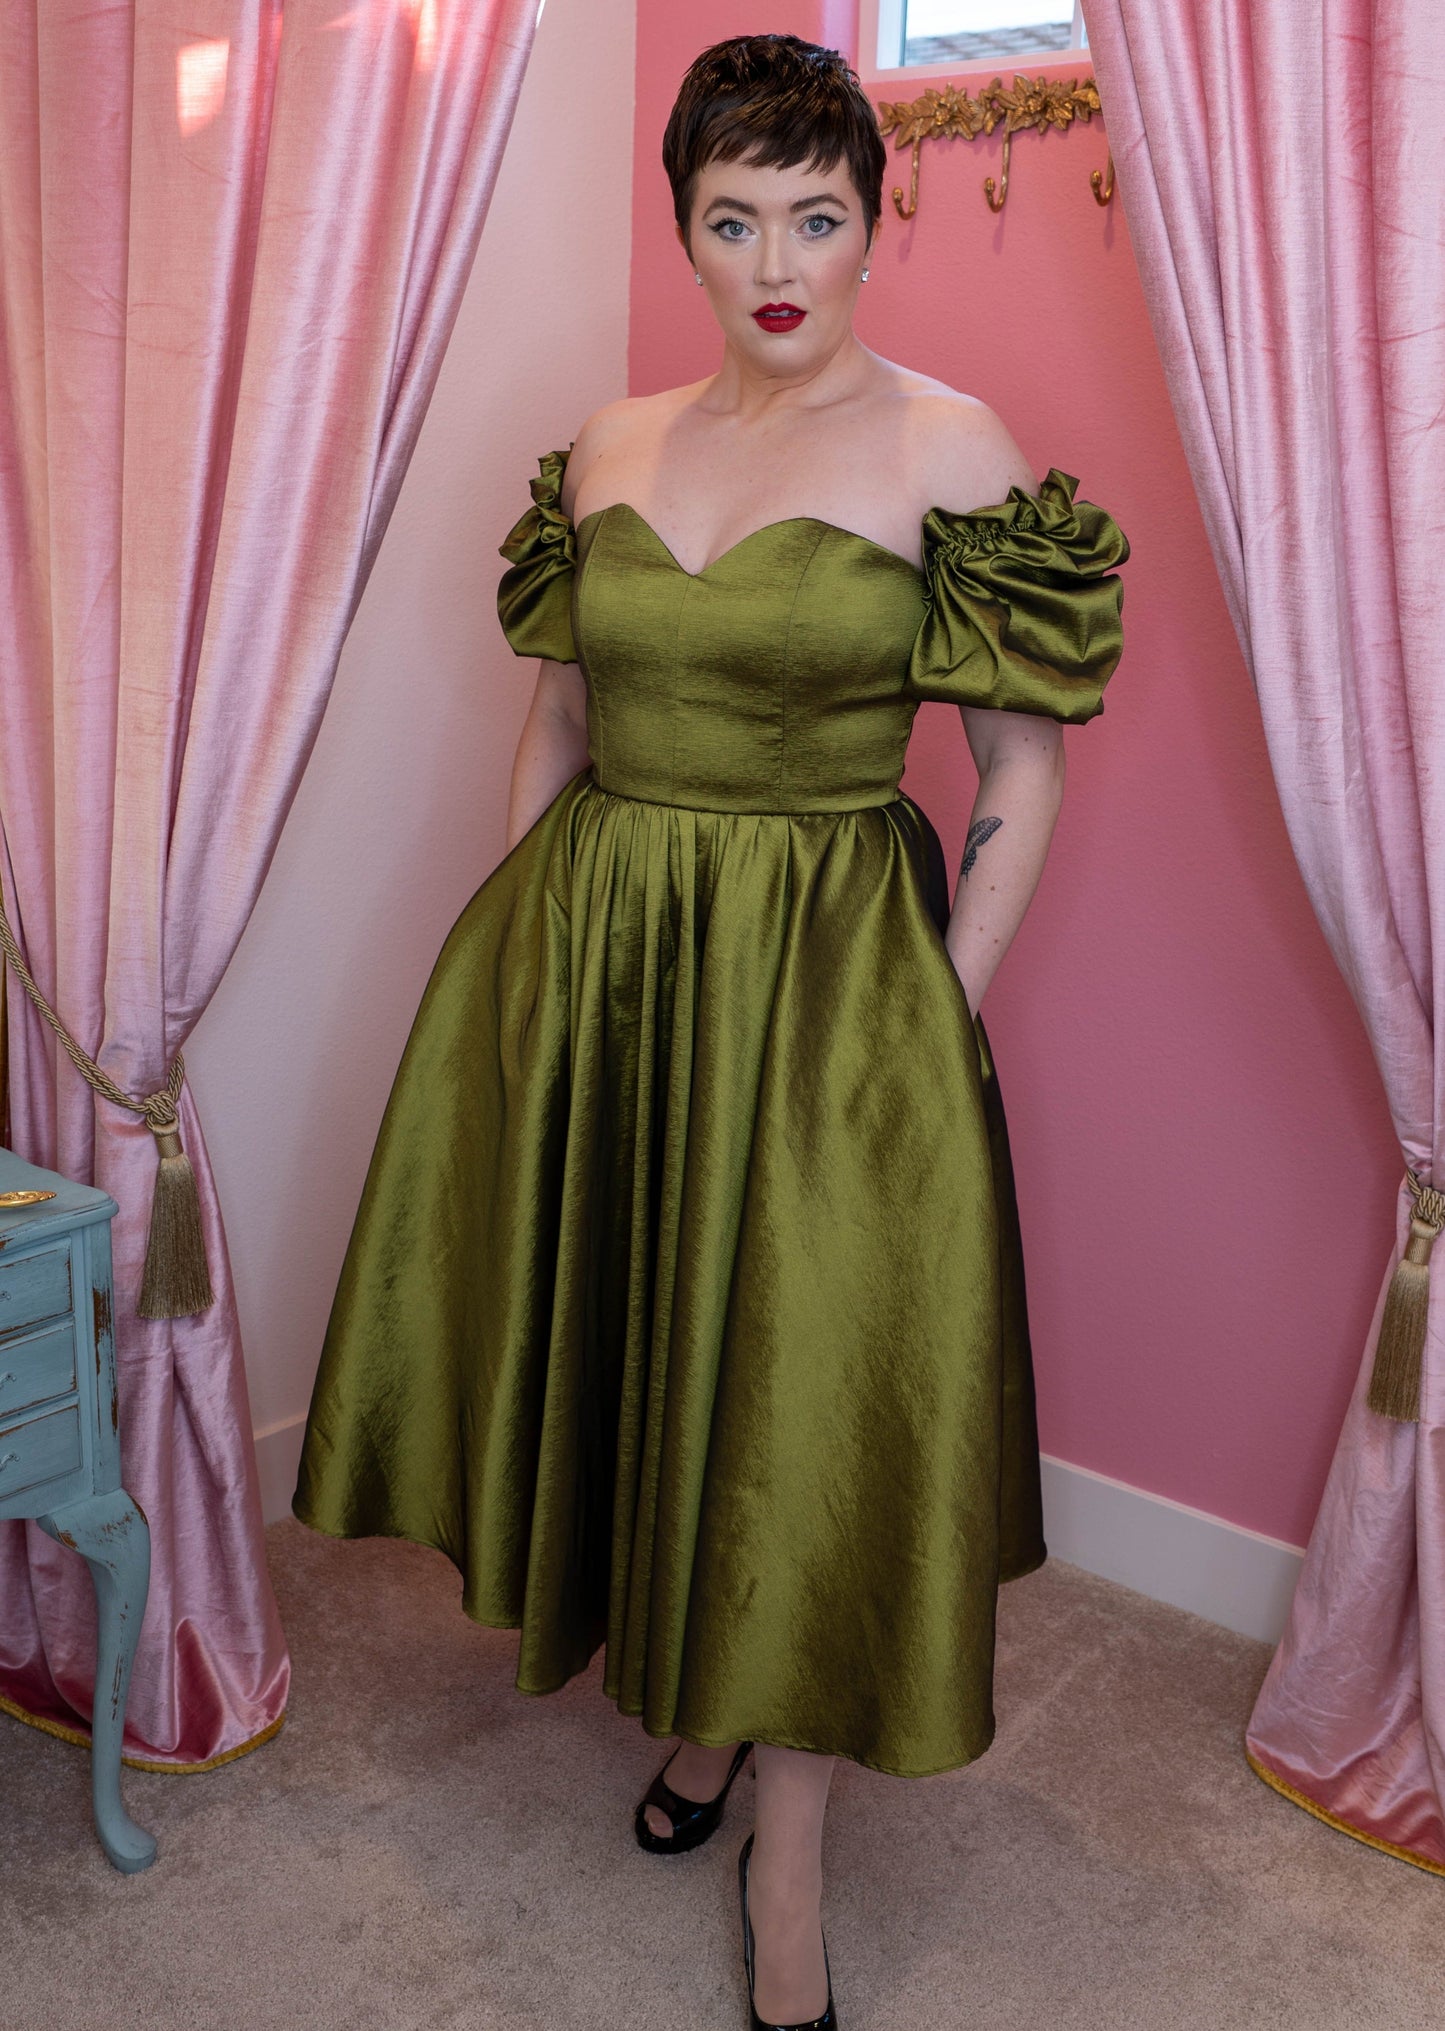 Agatha Dress Olive Green + Custom Colors